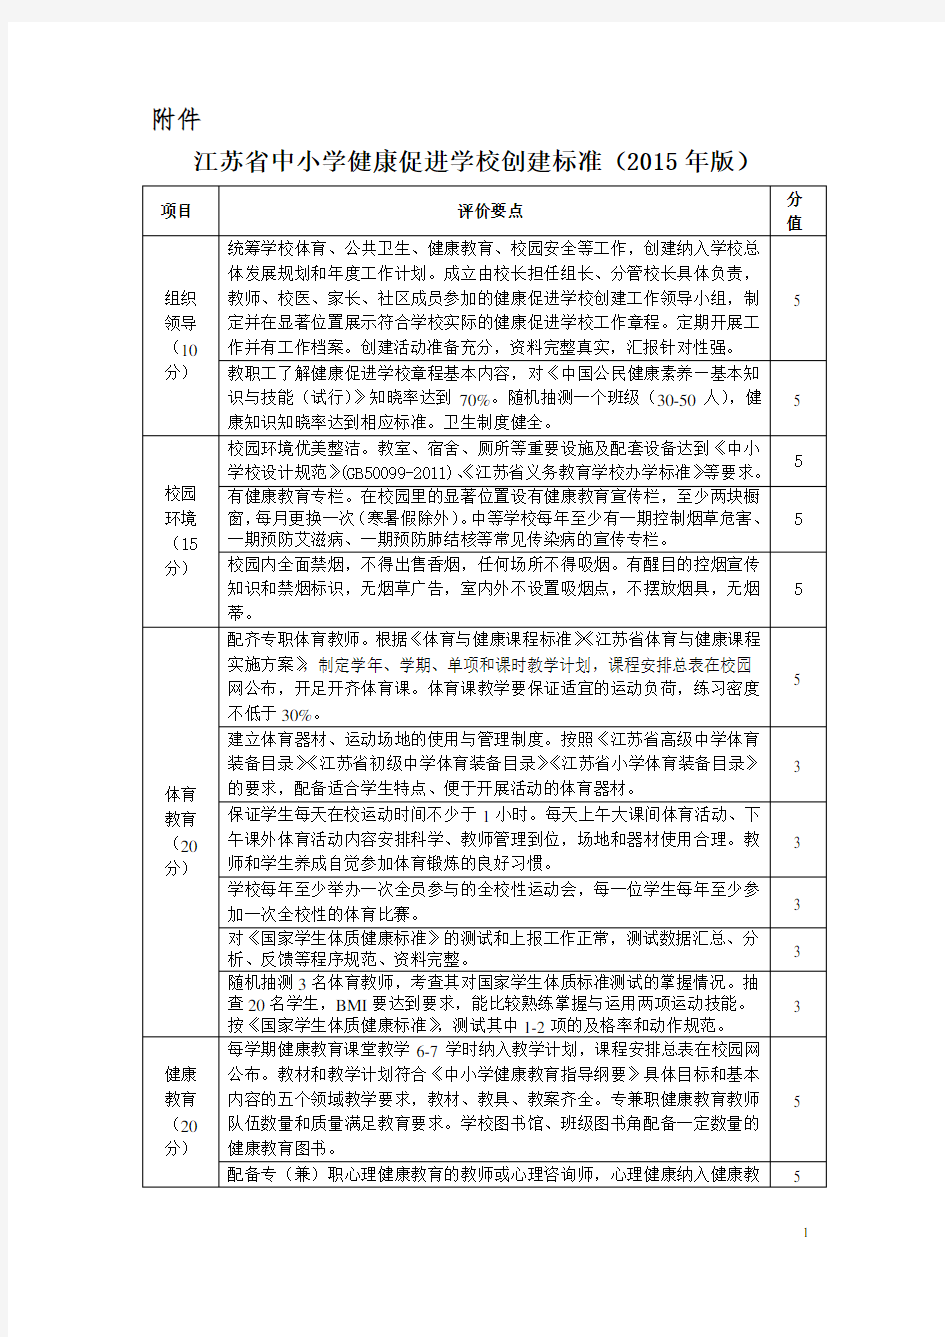 江苏省中小学健康促进学校创建标准(2015版)